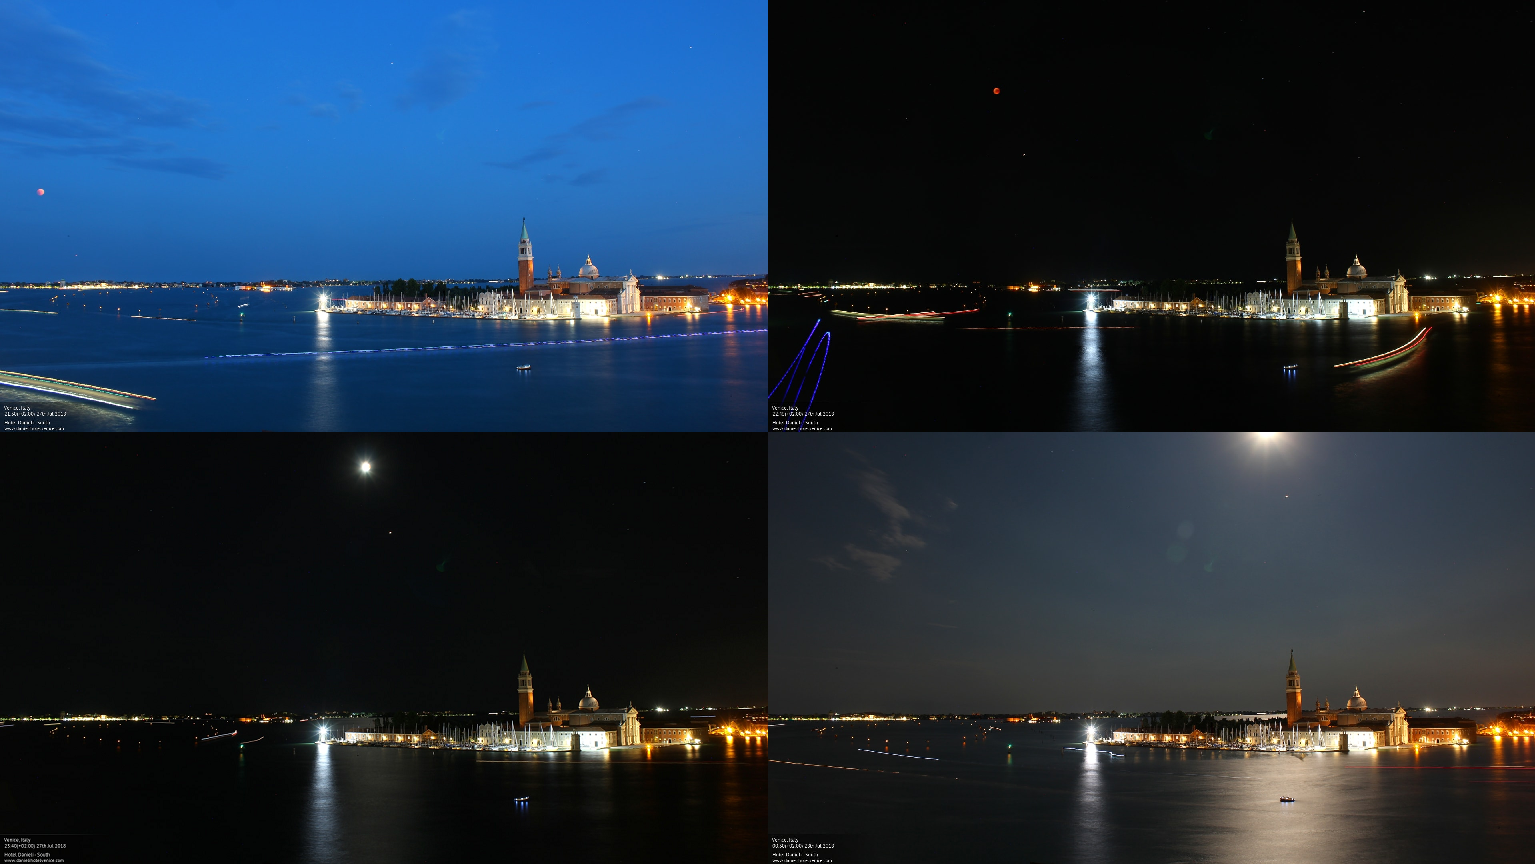 2018 total lunar eclipse seen through Hotel Danieli webcam in Venice